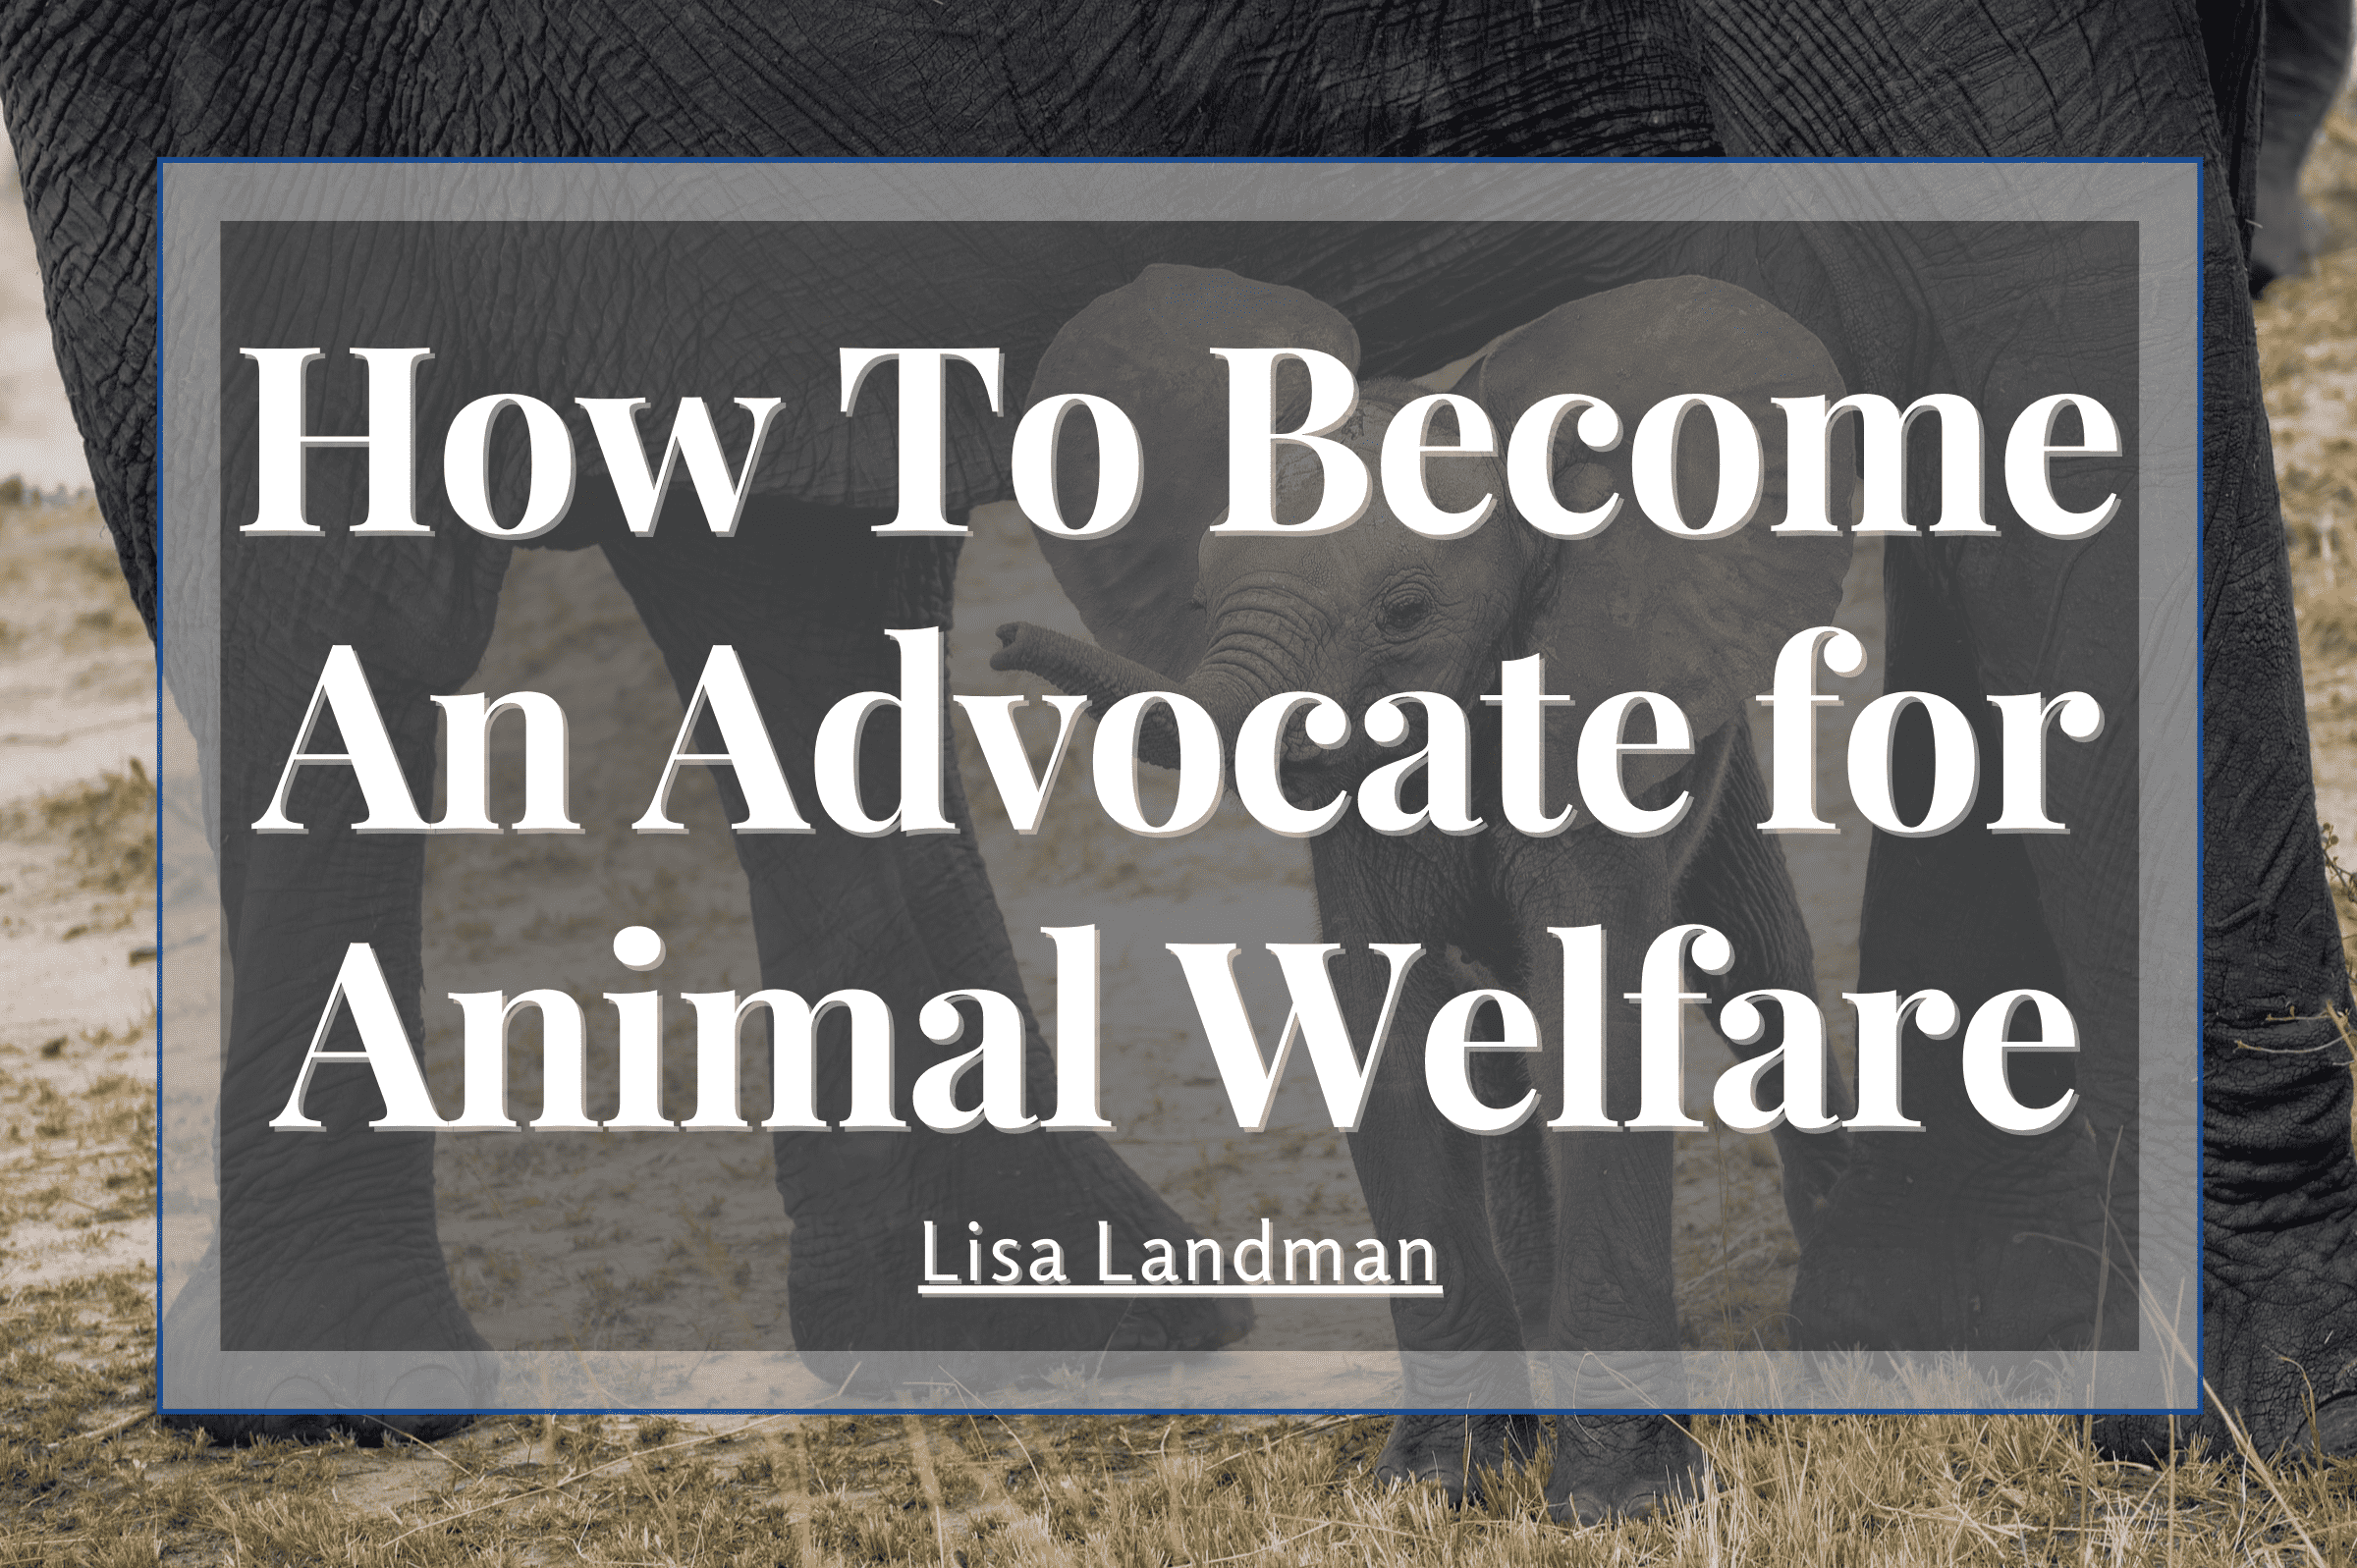 How to Become an Advocate for Animal Welfare - Lisa Landman | Animal Welfare